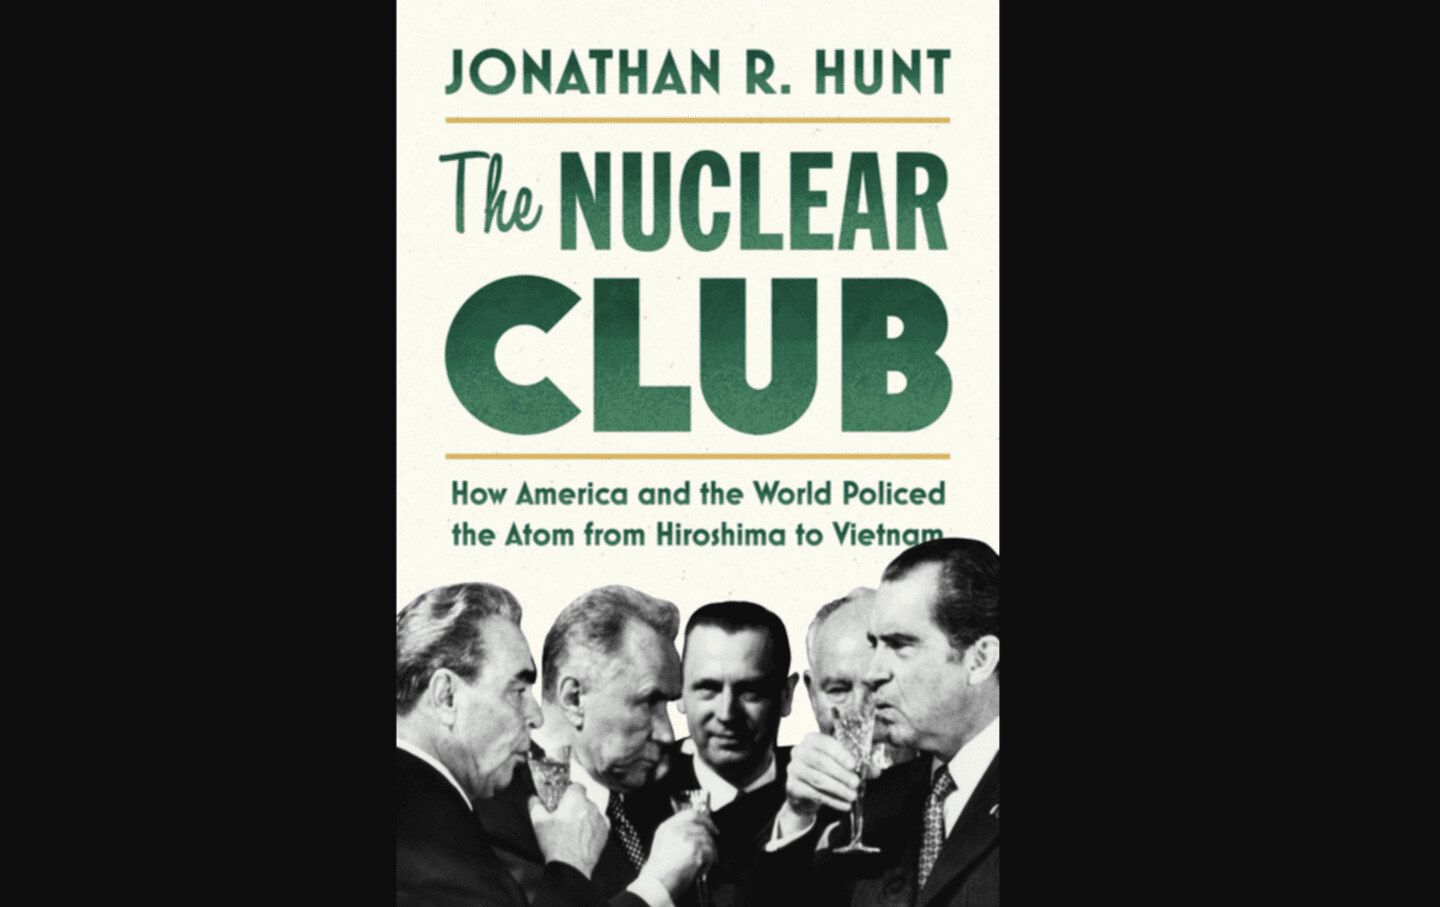 The Nuclear Club, Part 3